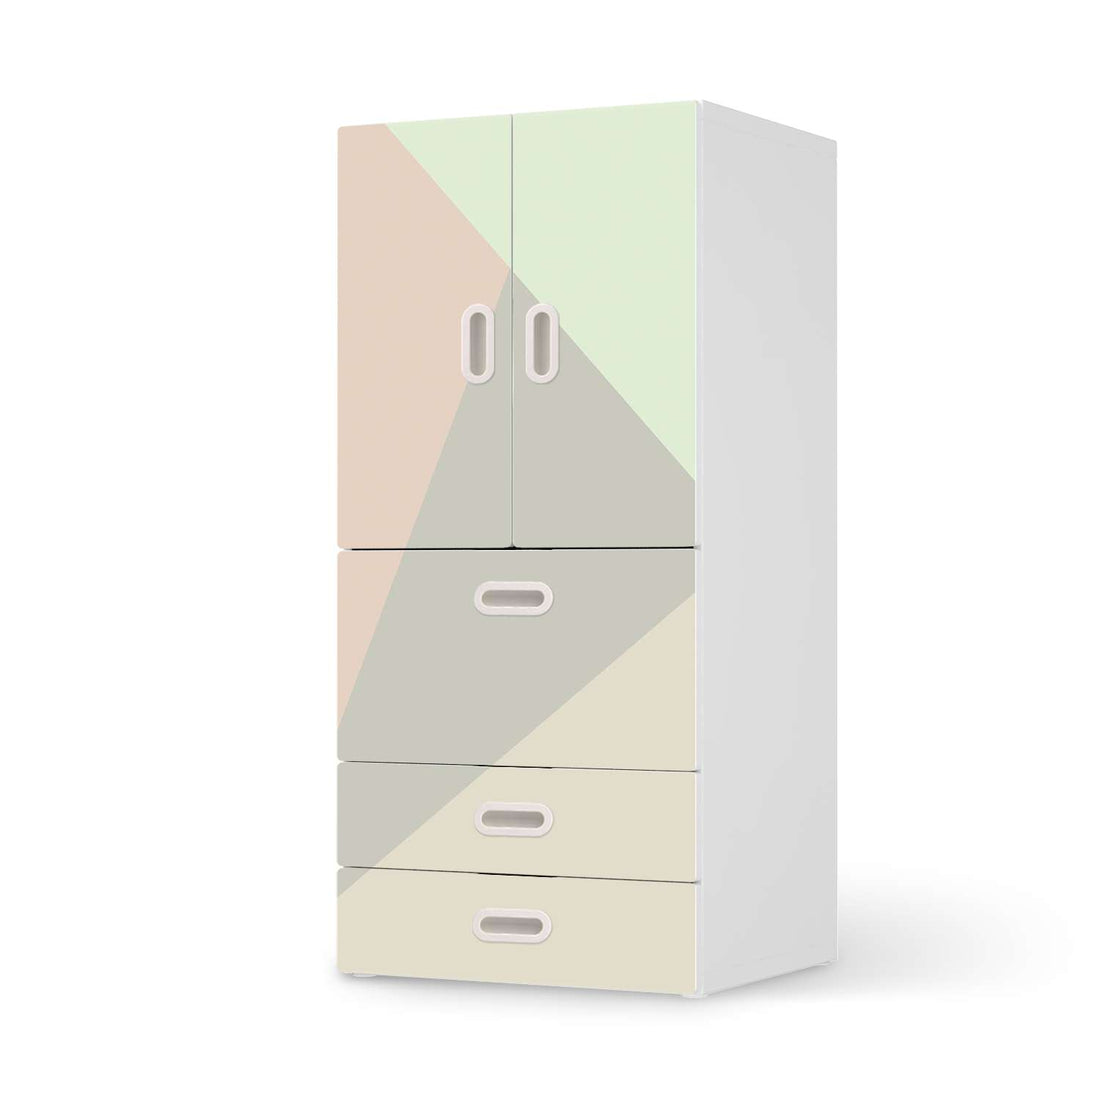 Möbelfolie Pastell Geometrik - IKEA Stuva / Fritids kombiniert - 3 Schubladen und 2 kleine Türen  - weiss